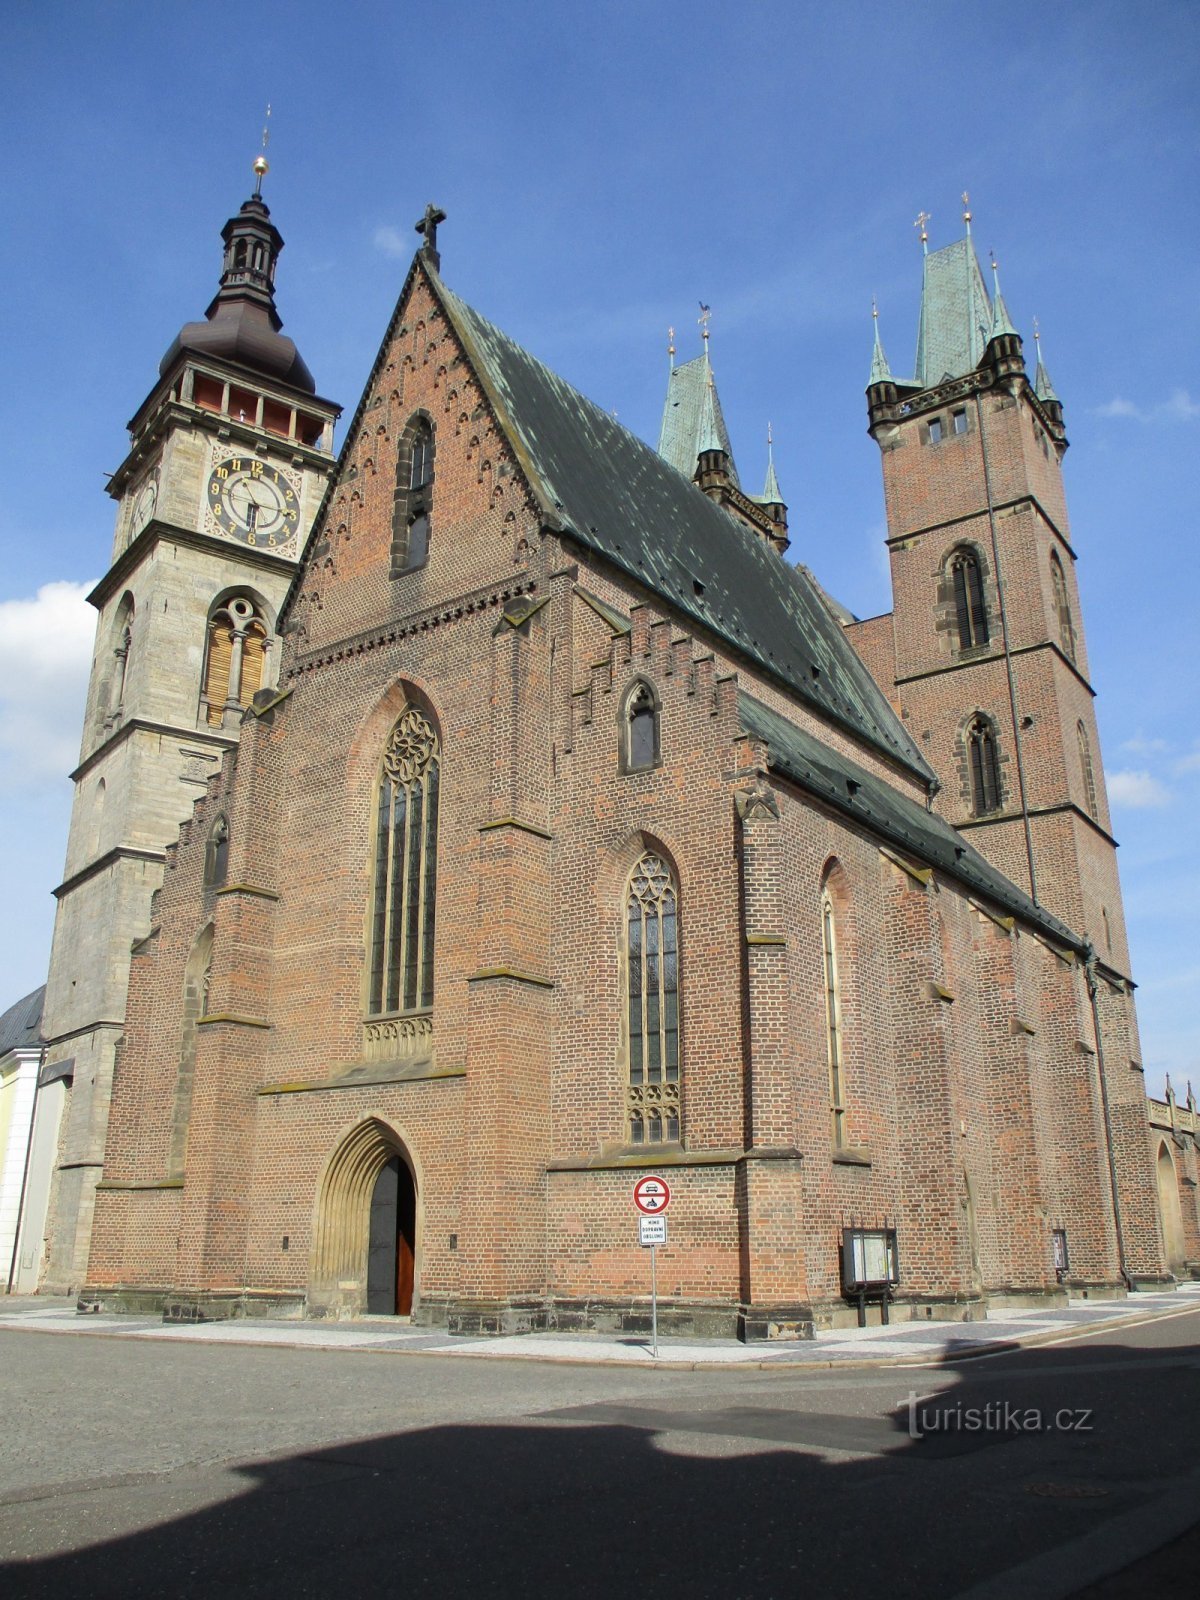 Tháp Trắng và Nhà thờ St. Spirit (Hradec Králové, 15.9.2019/XNUMX/XNUMX)